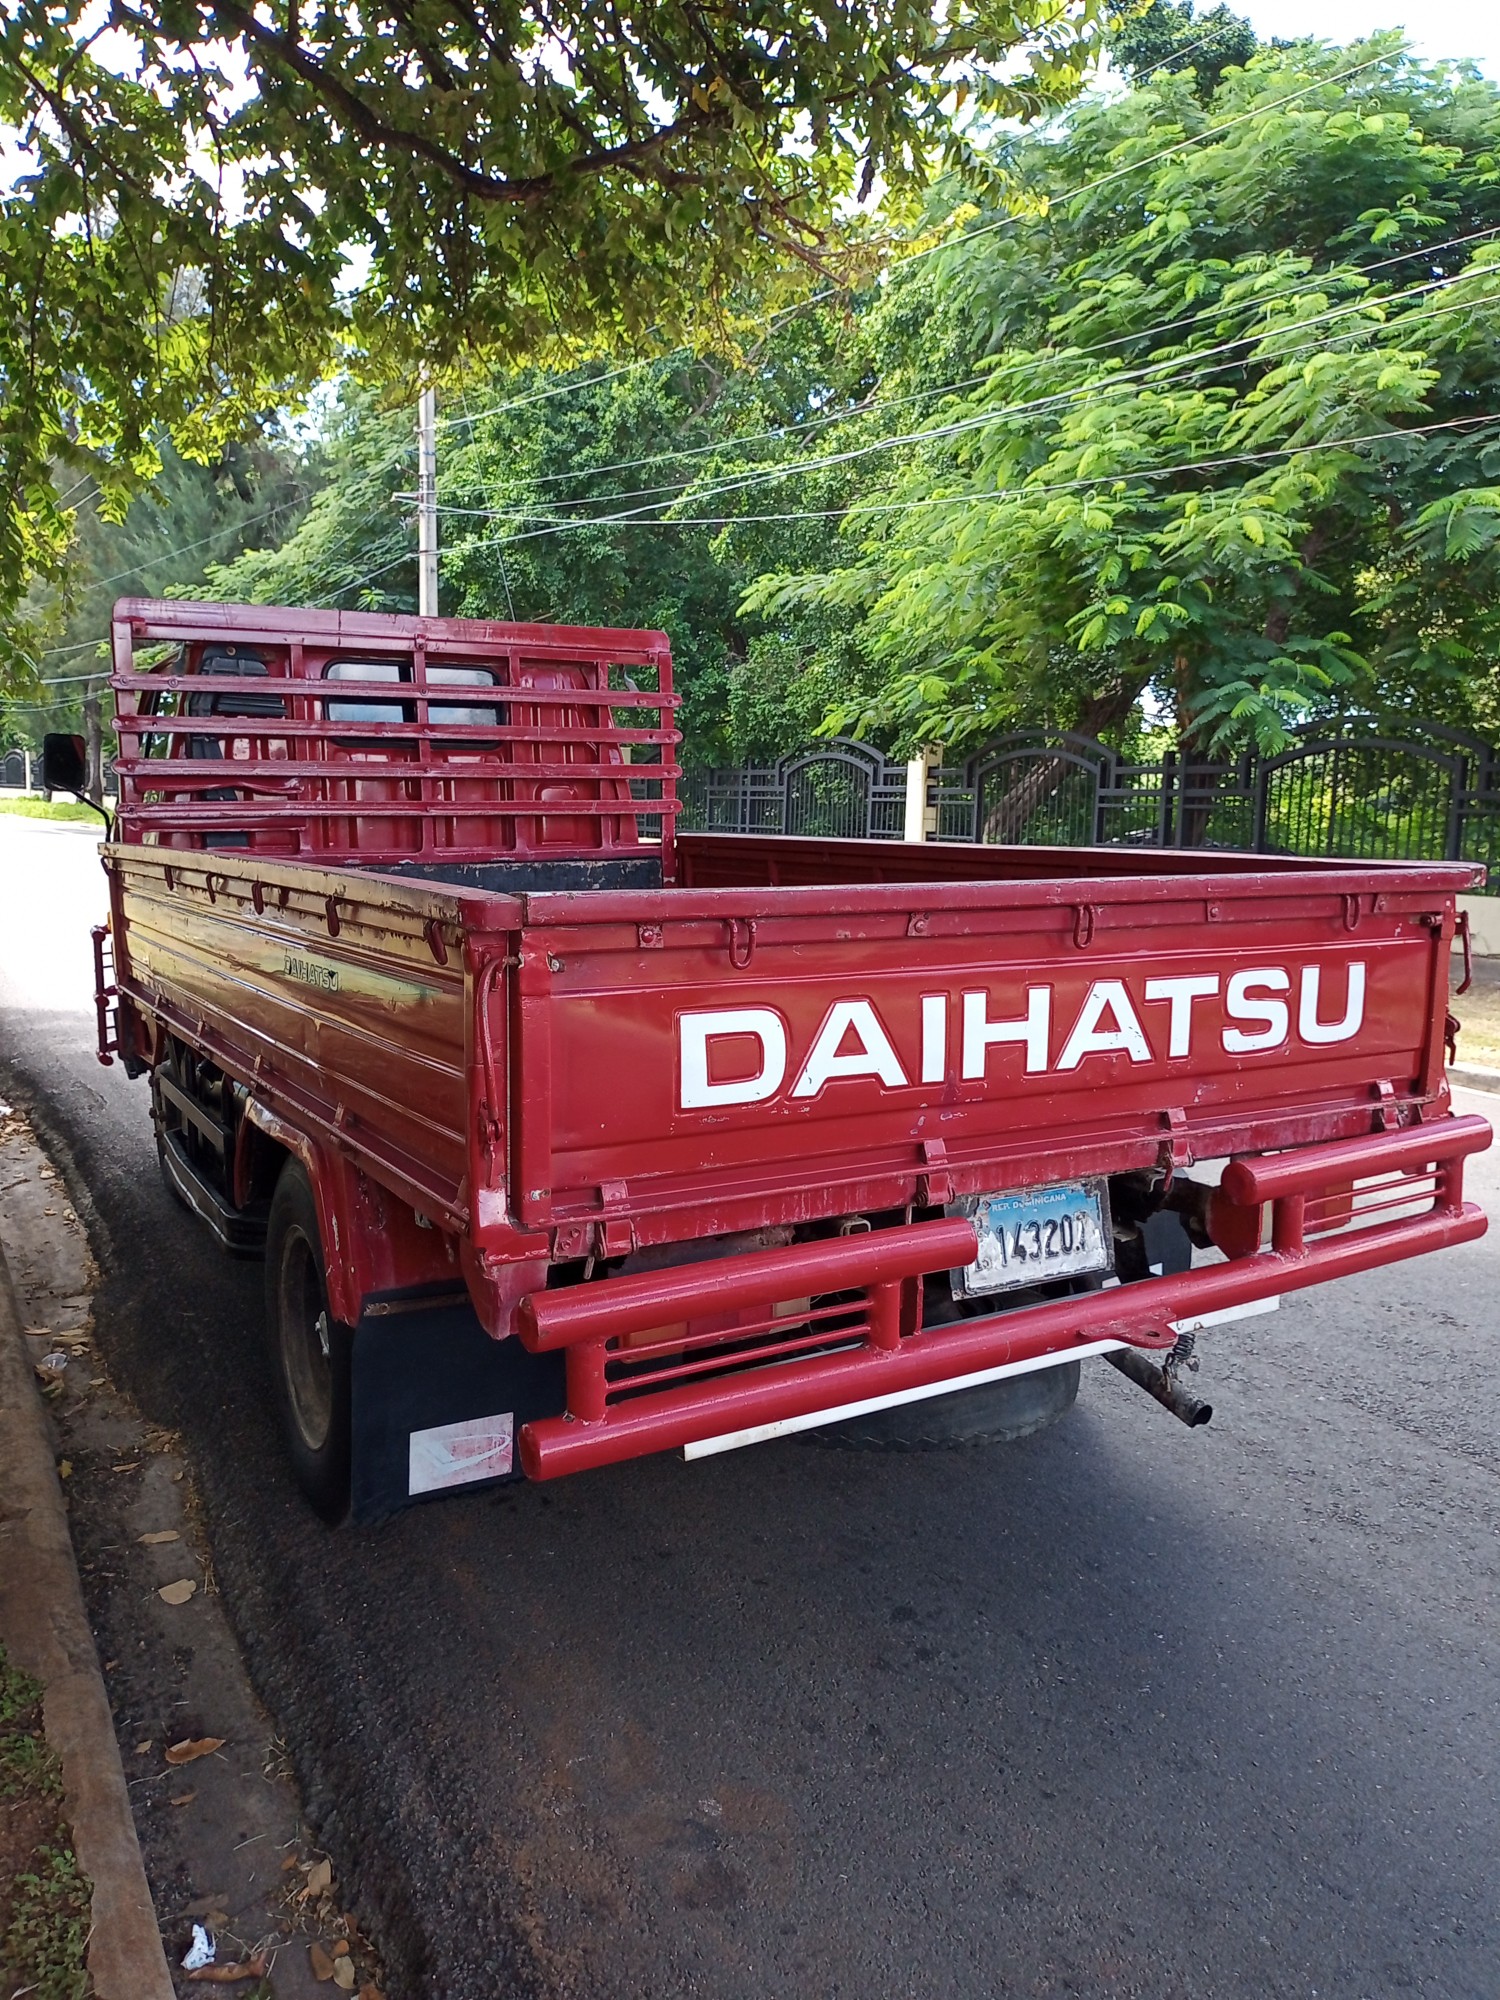 camiones y vehiculos pesados - Daihatsu 2000 cama corta